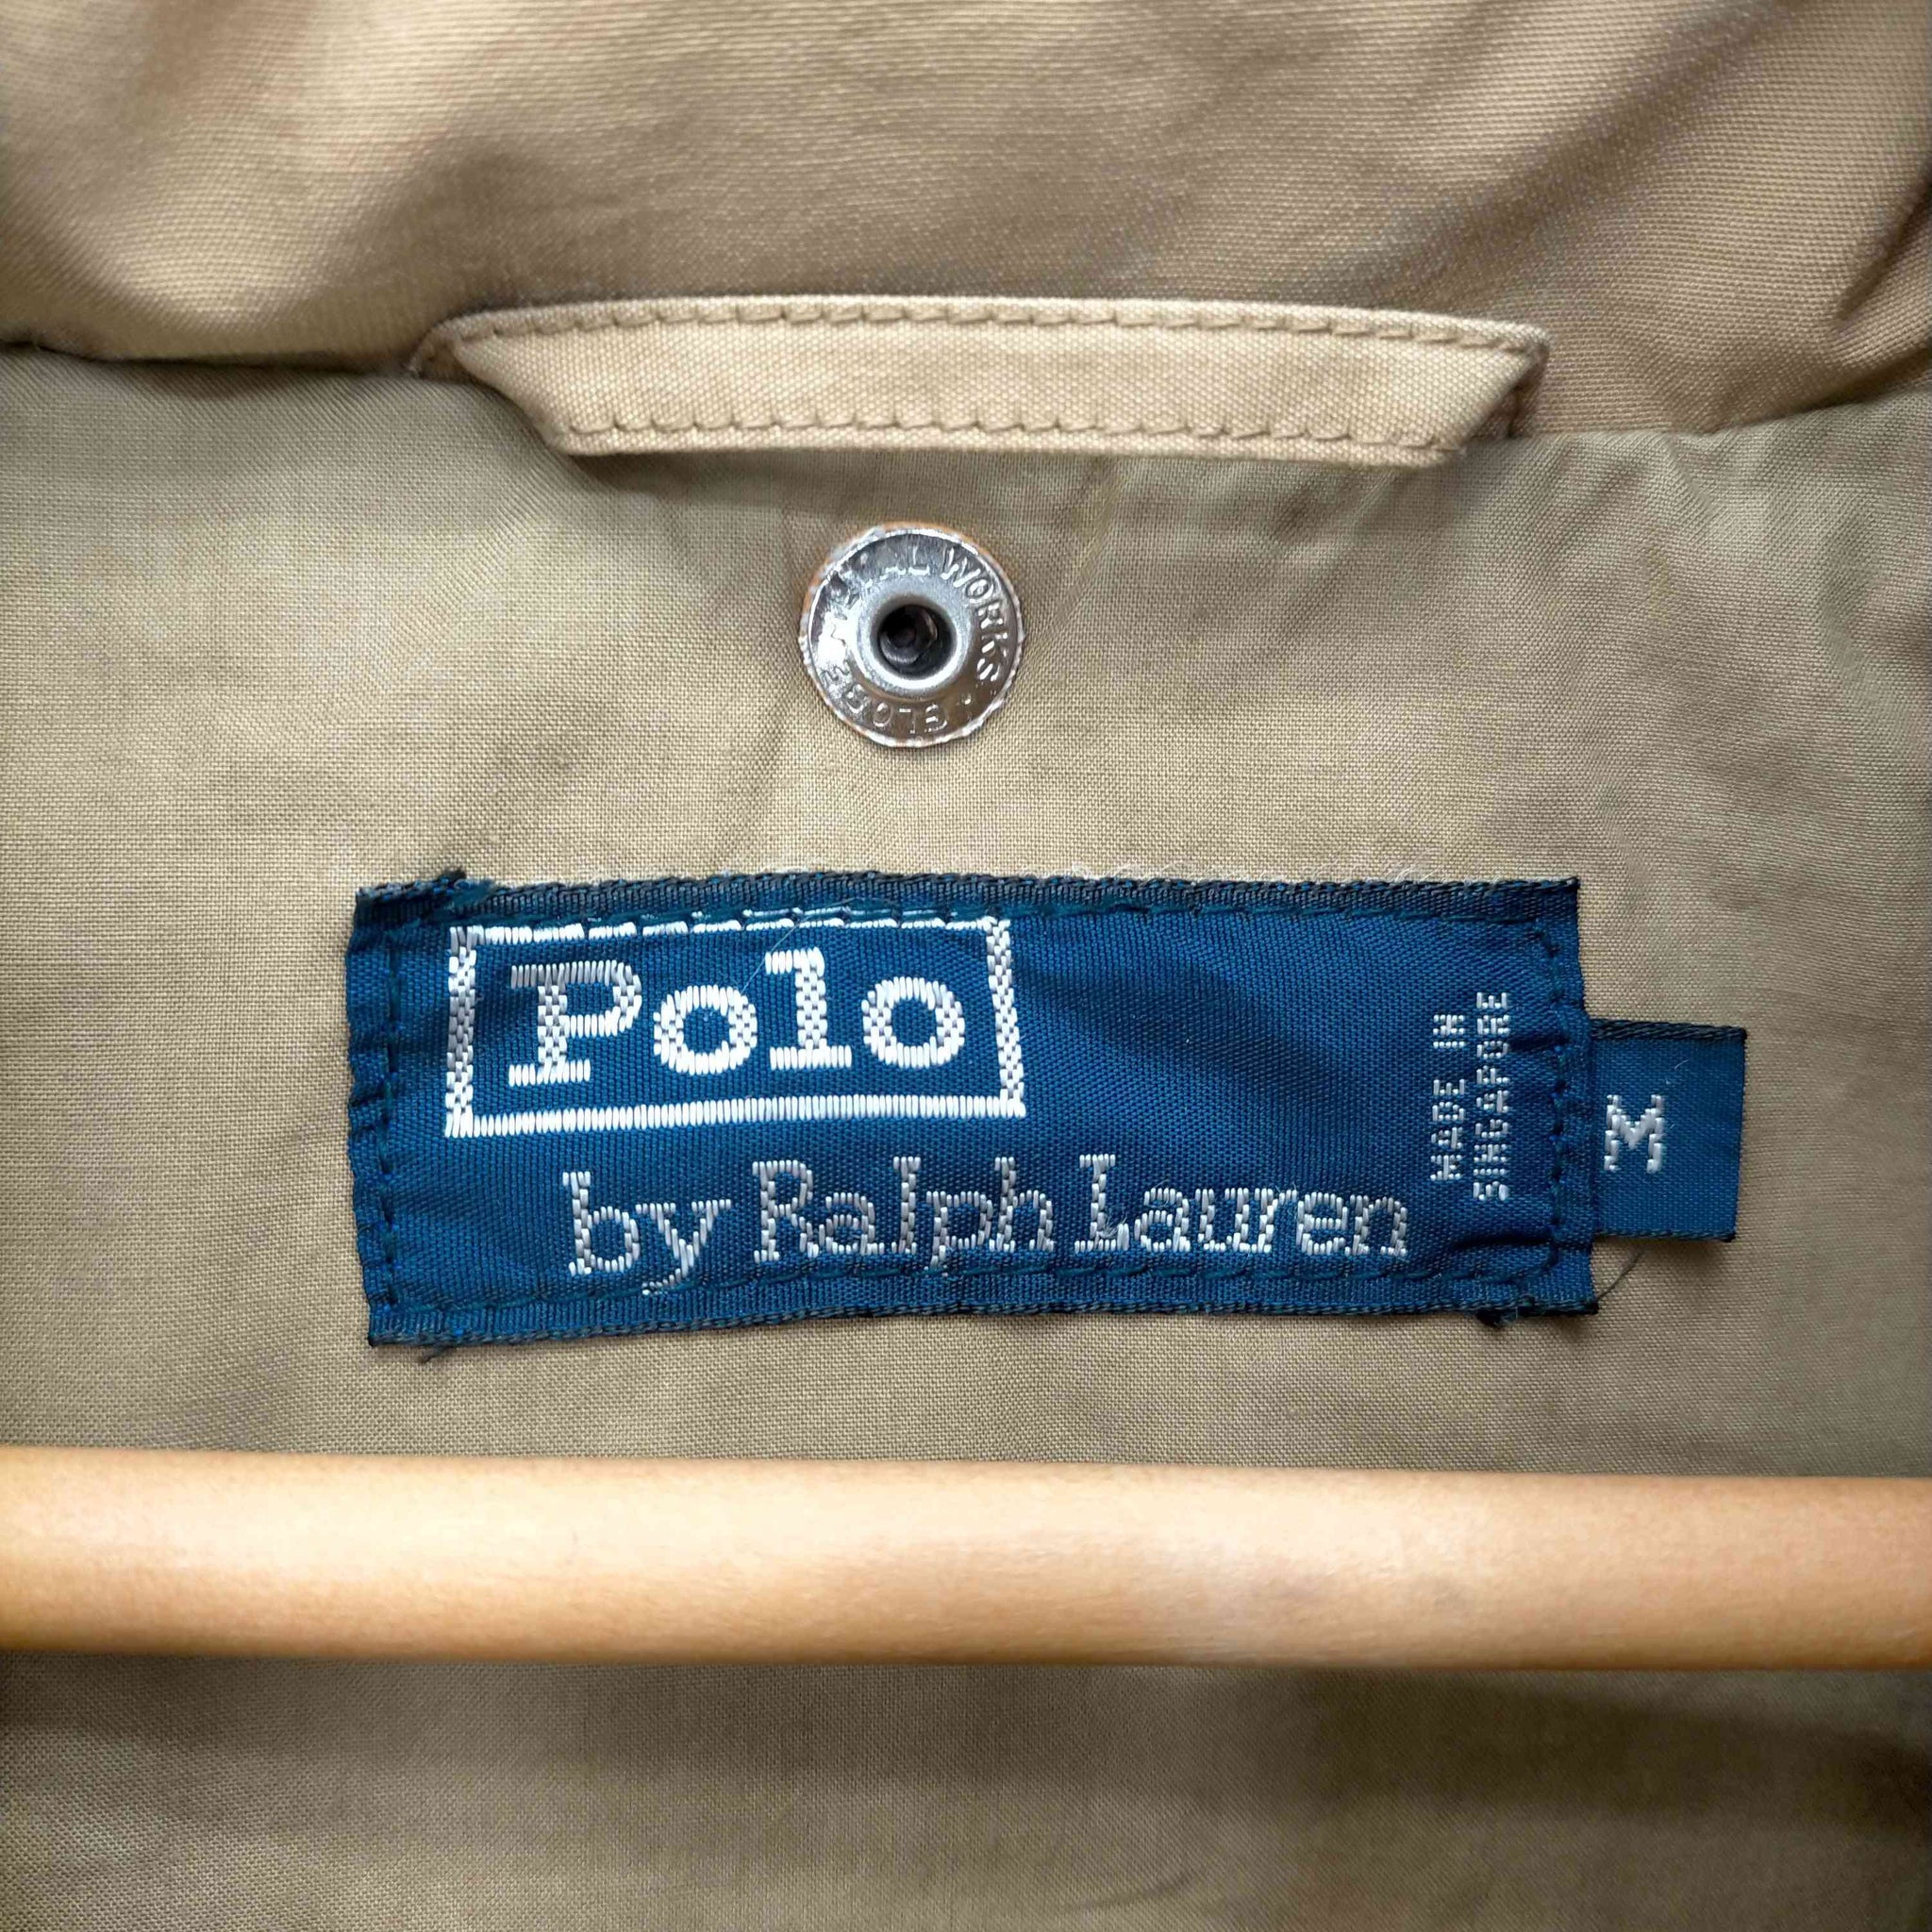 Polo by RALPH LAUREN(ポロバイラルフローレン)90S ナイガイ社 1967